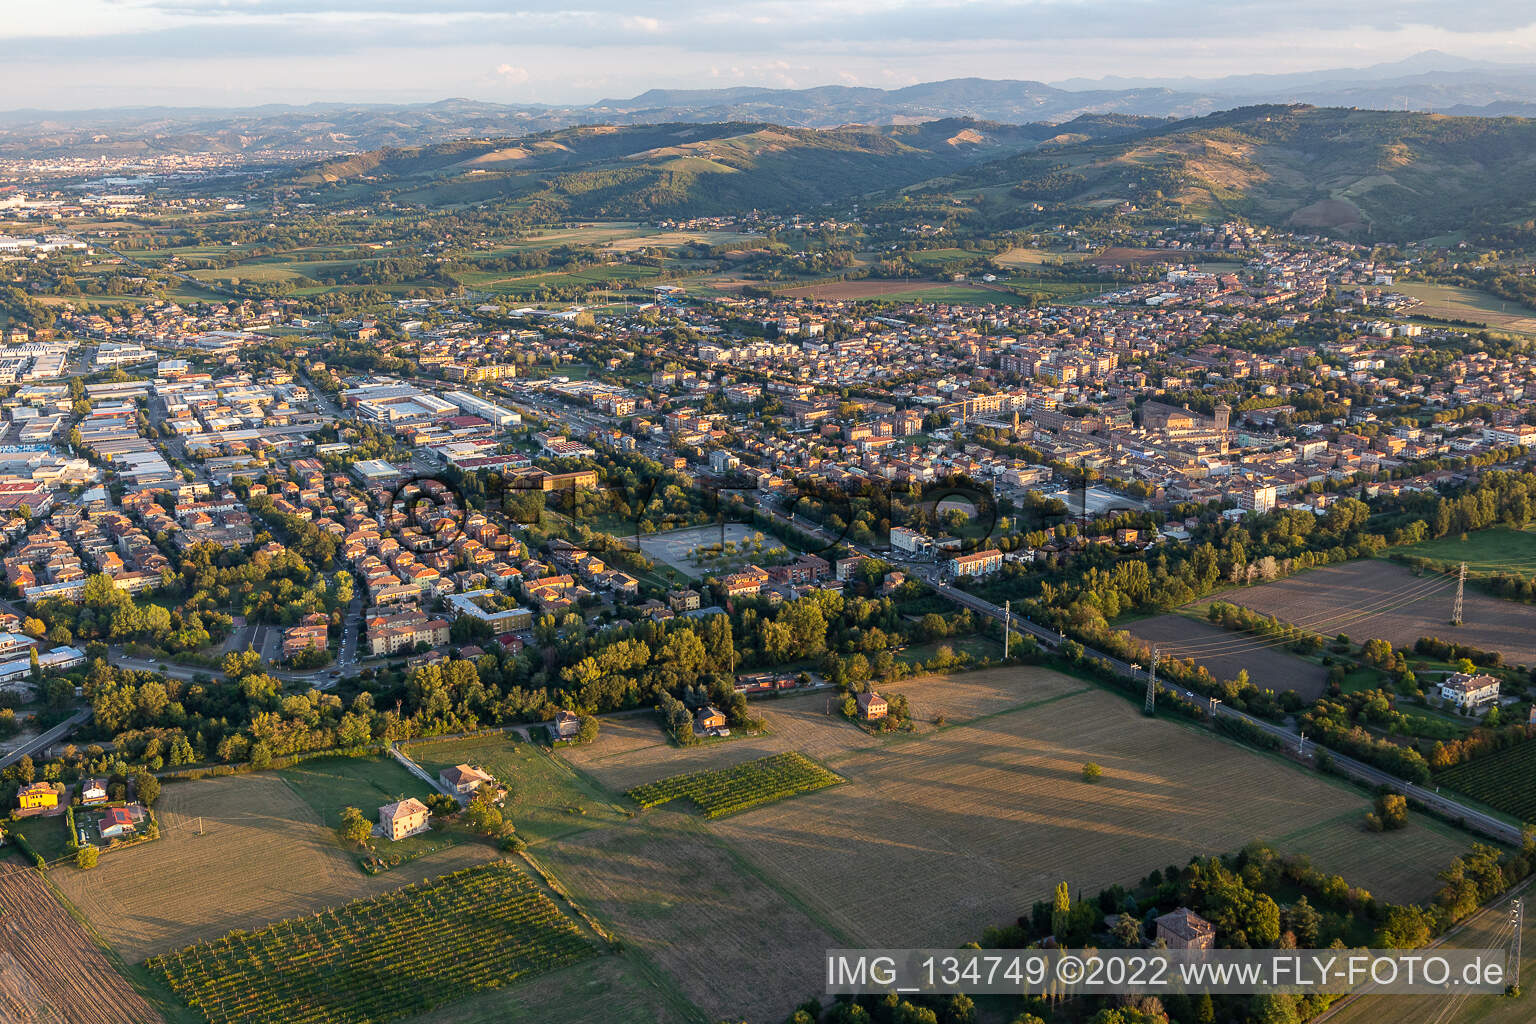 Luftbild von Scandiano im Bundesland Reggio Emilia, Italien